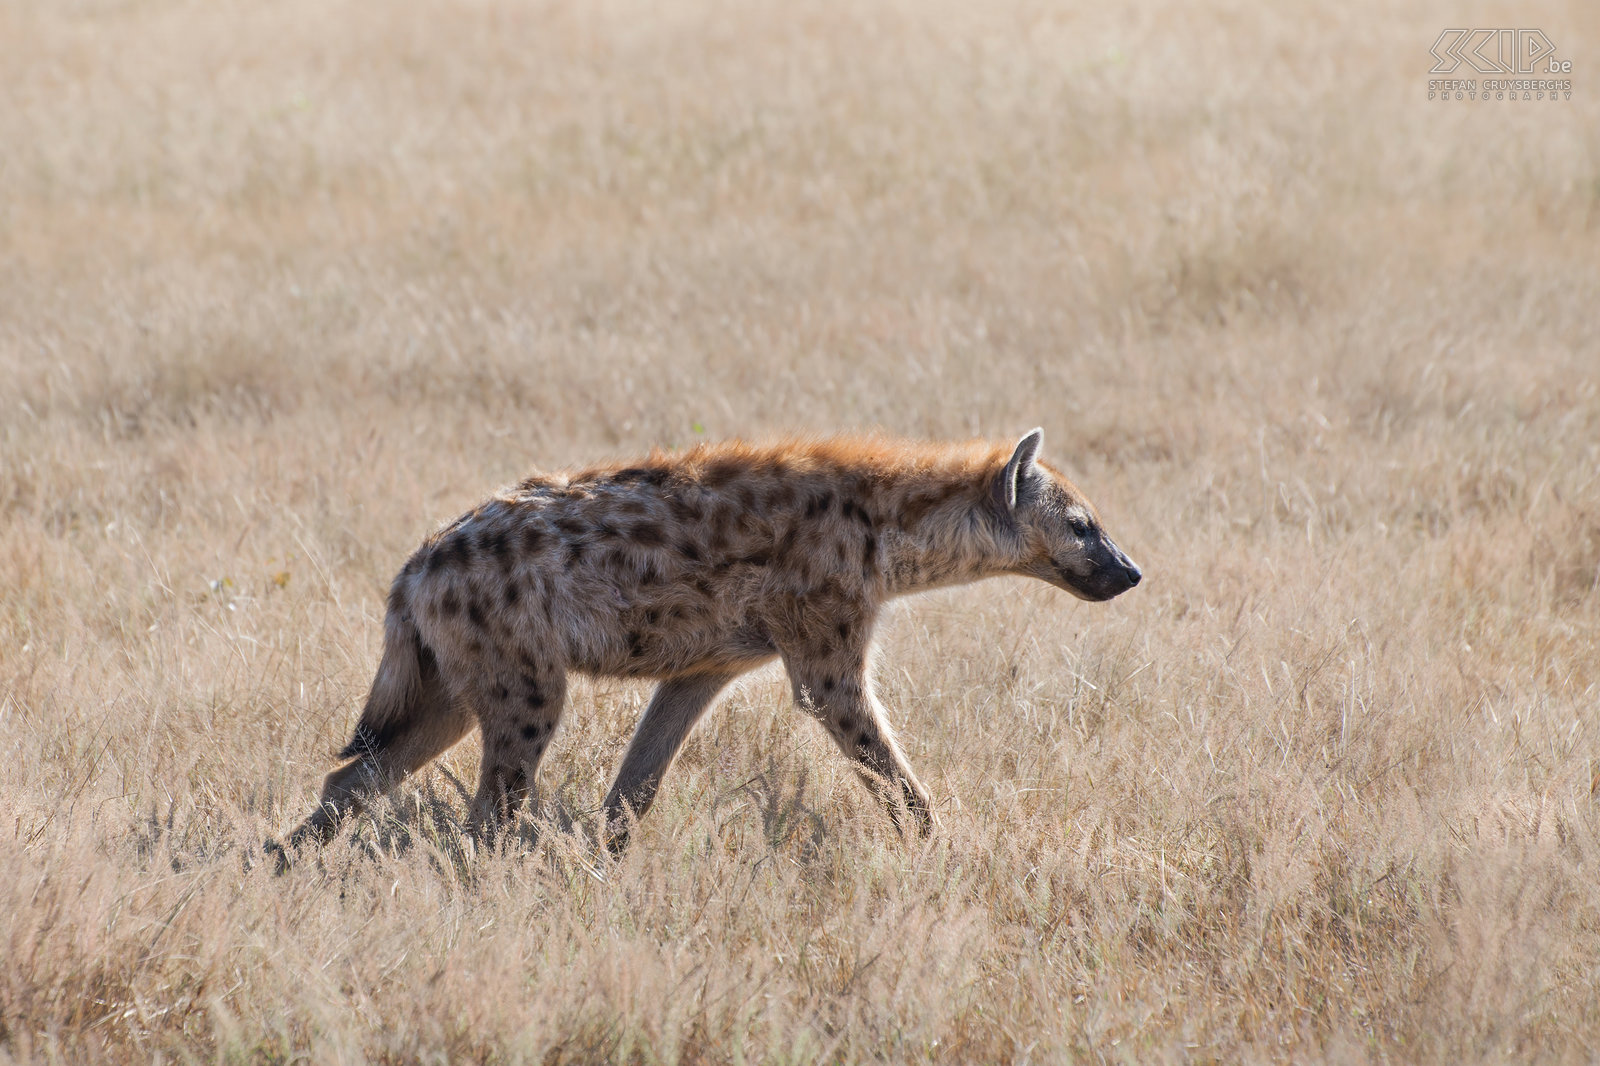 South Luangwa - Gevlekte hyena We hadden ze al ‘s nachts gezien maar ook overdag kwamen we enkele hyena’s tegen. De gevlekte hyena (Spotted hyena, Crocuta crocuta) is de grootste, agressiefste en de luidruchtigste hyenasoort. De hyena is een opportunistische carnivoor, die zelf op prooien kan jagen, maar ook vaak probeert om een stukje te bemachtigen van de vangst van een luipaard of leeuwen. Stefan Cruysberghs